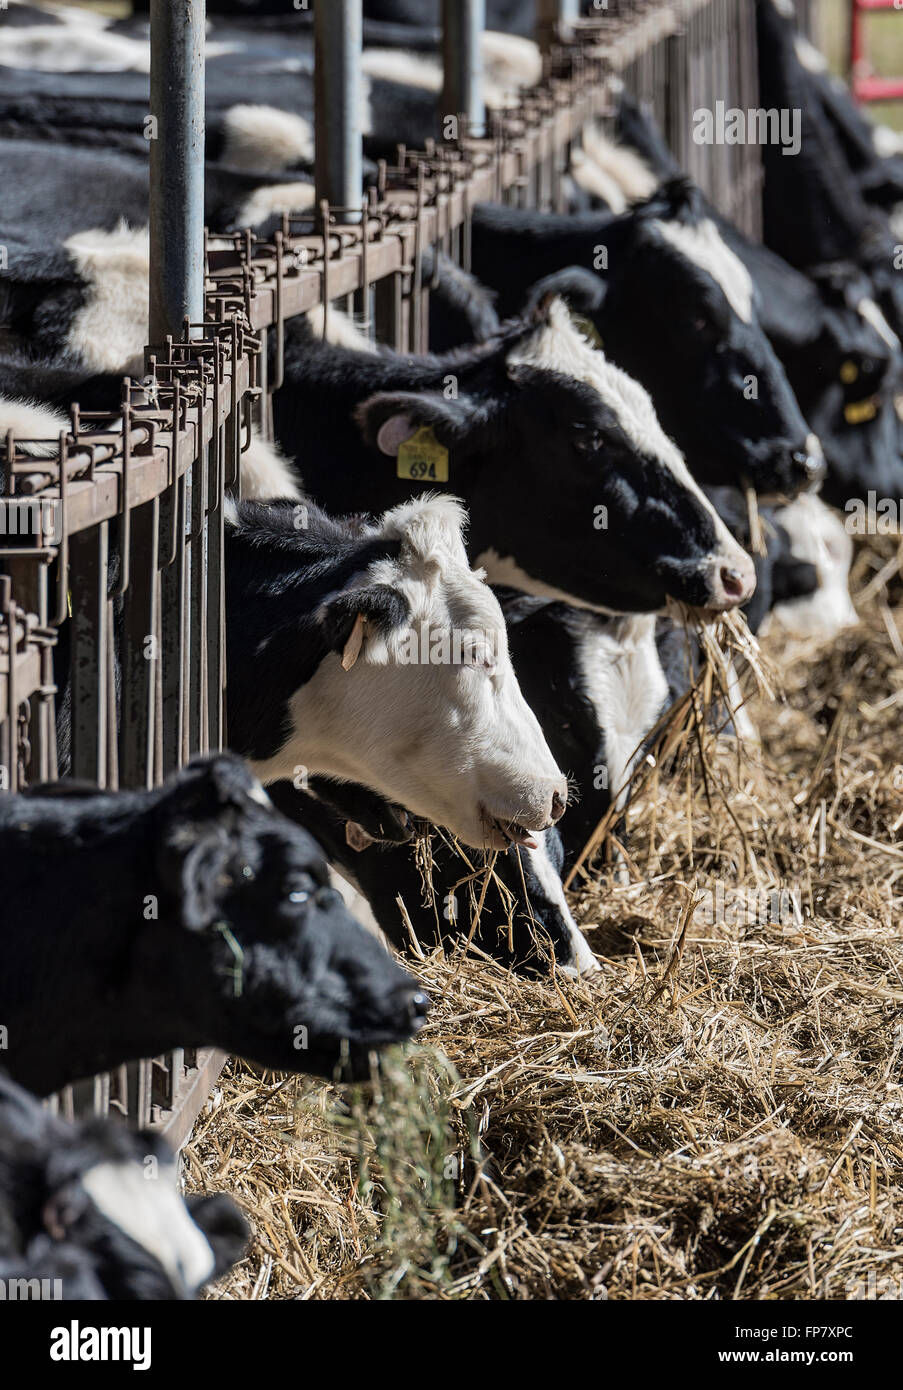 Les vaches se nourrissent de foin, Vermont, Etats-Unis Banque D'Images